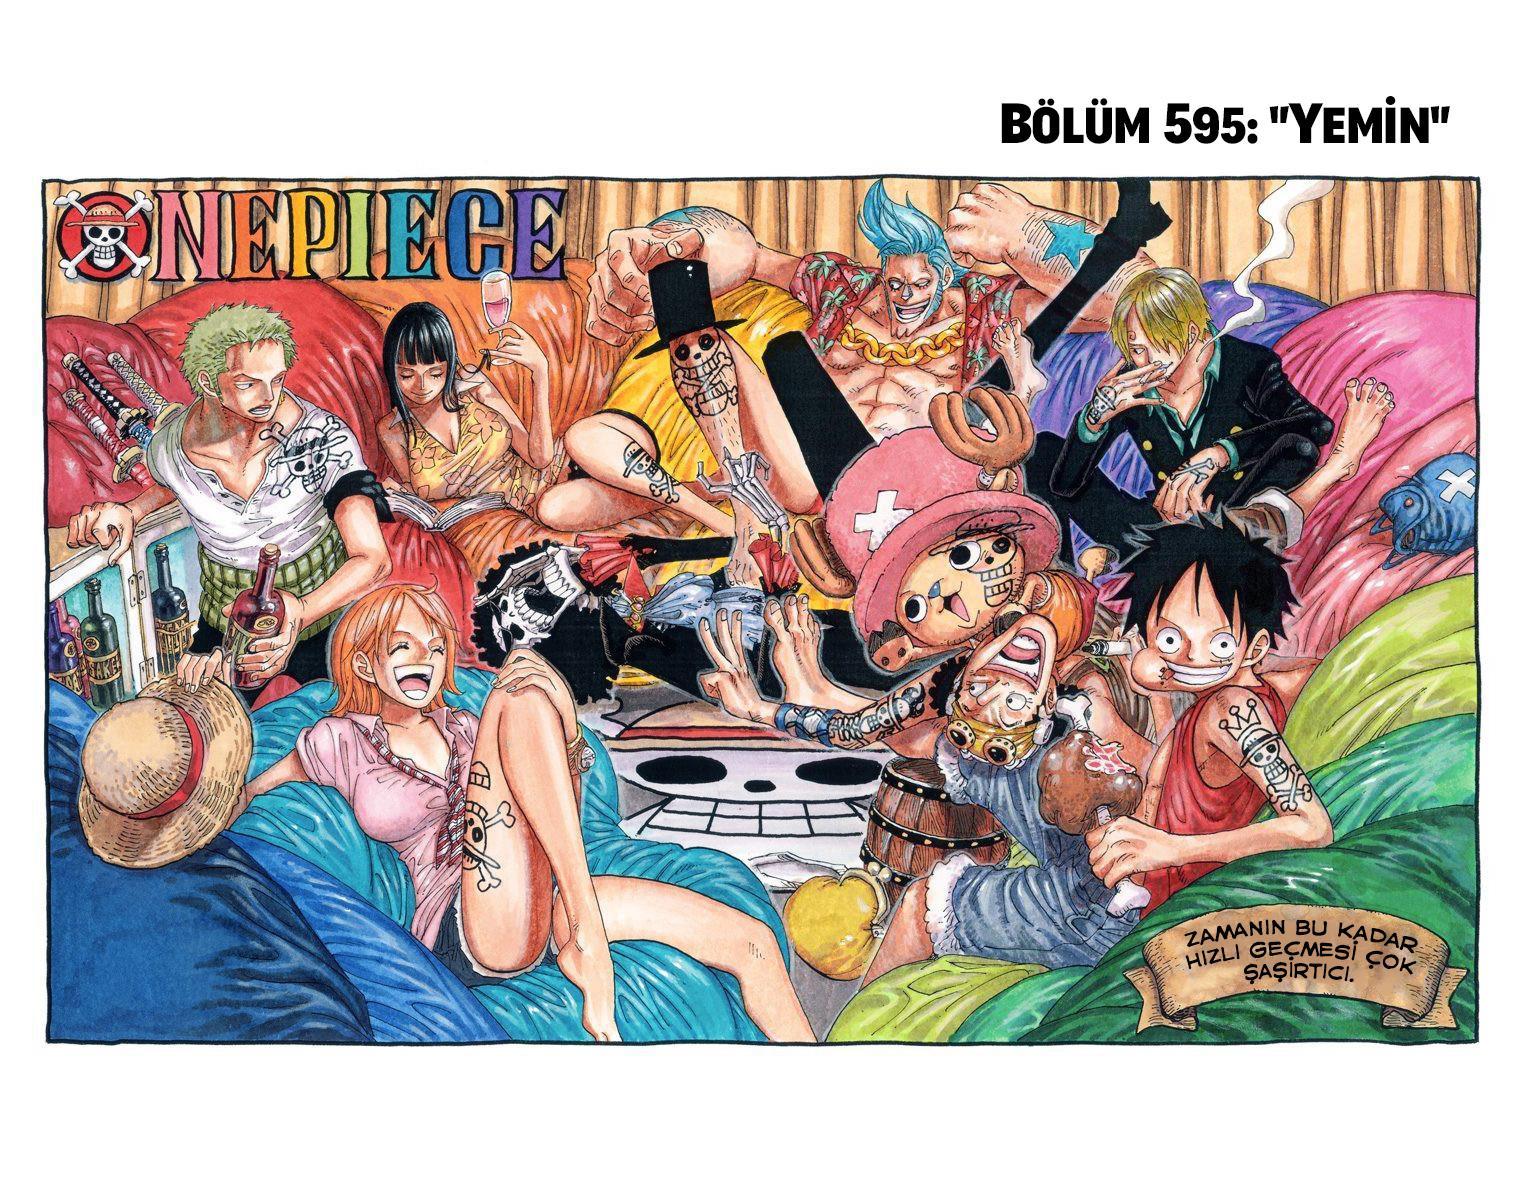 One Piece [Renkli] mangasının 0595 bölümünün 2. sayfasını okuyorsunuz.